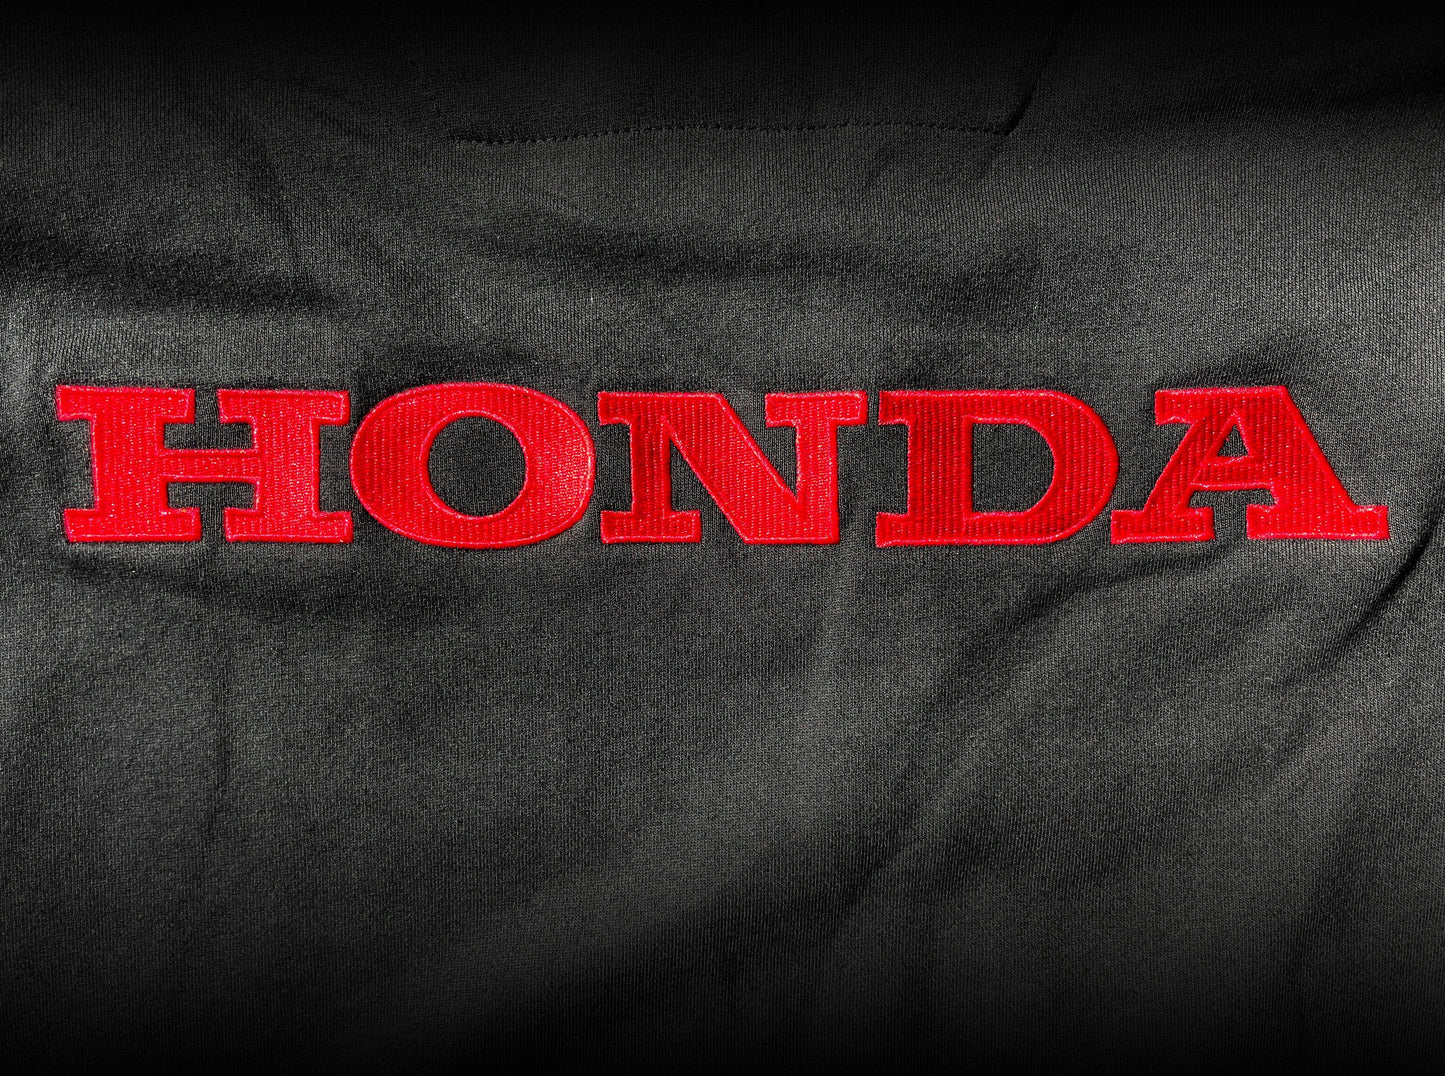 Honda Racing Team Hoodie (1968)